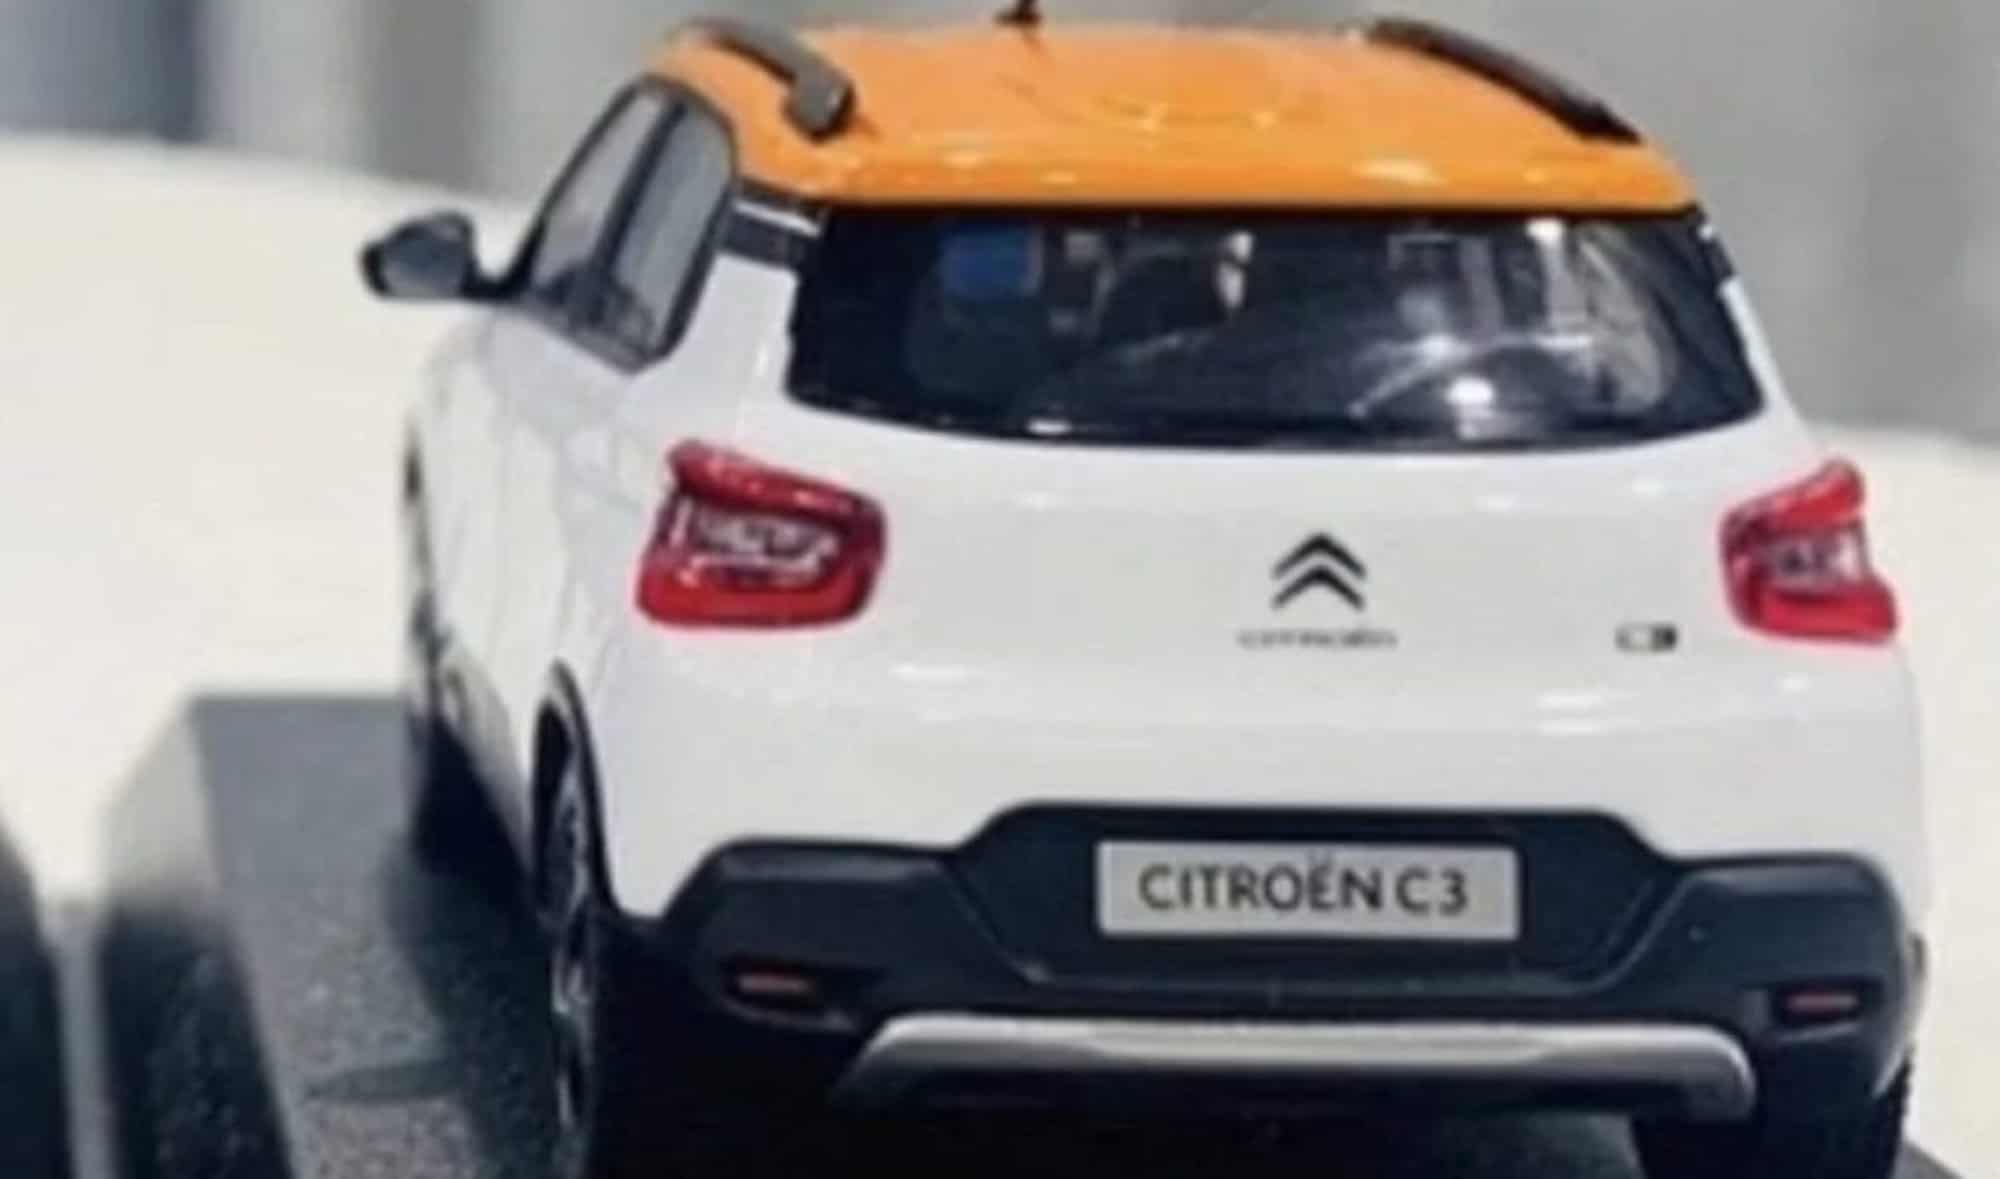 Citroen C3 leaked